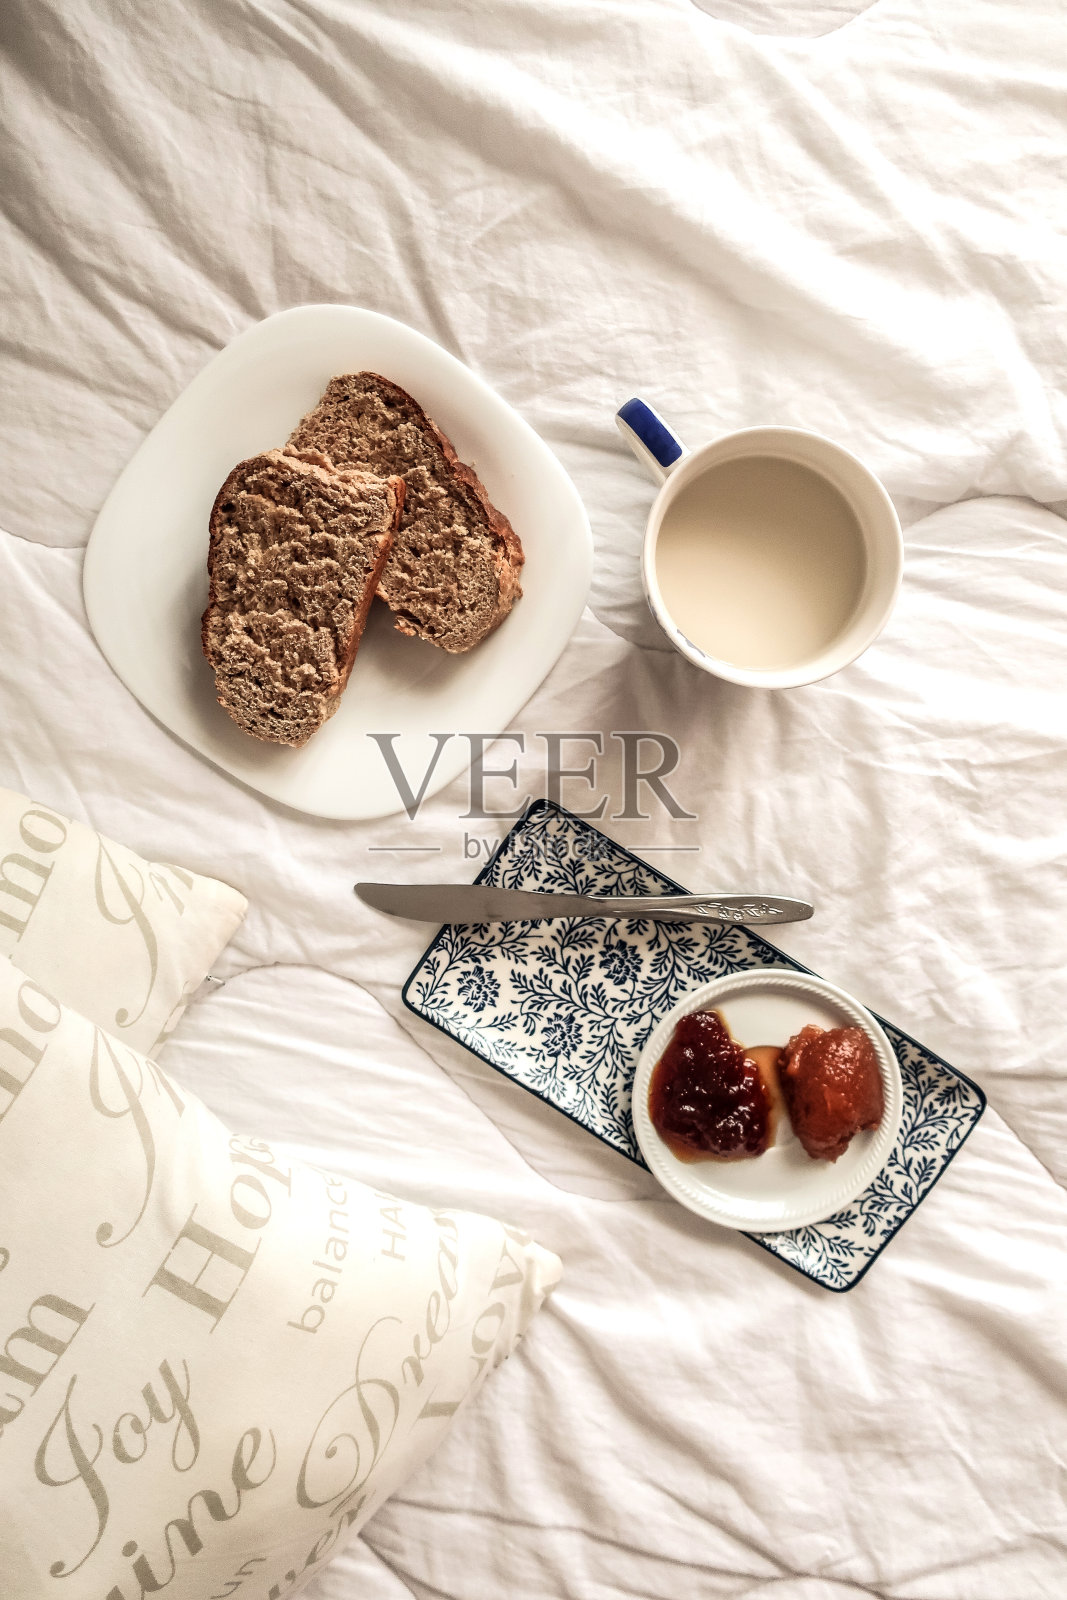 周日早上在床上吃早餐，一杯牛奶茶，面包和自制果酱照片摄影图片